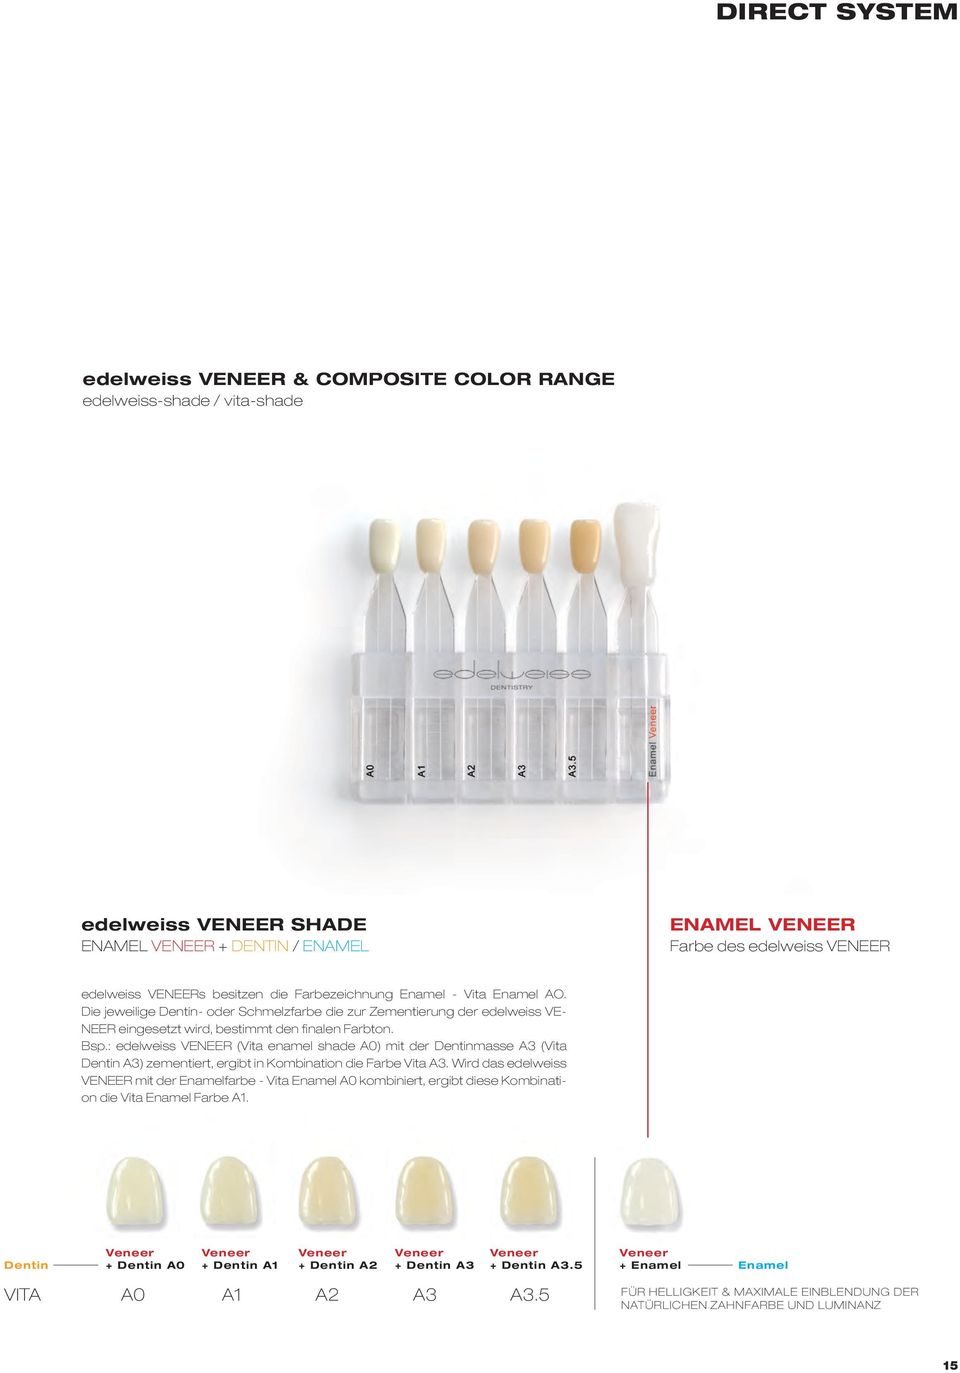 : edelweiss VENEER (Vita enamel shade A0) mit der Dentinmasse A3 (Vita Dentin A3) zementiert, ergibt in Kombination die Farbe Vita A3.